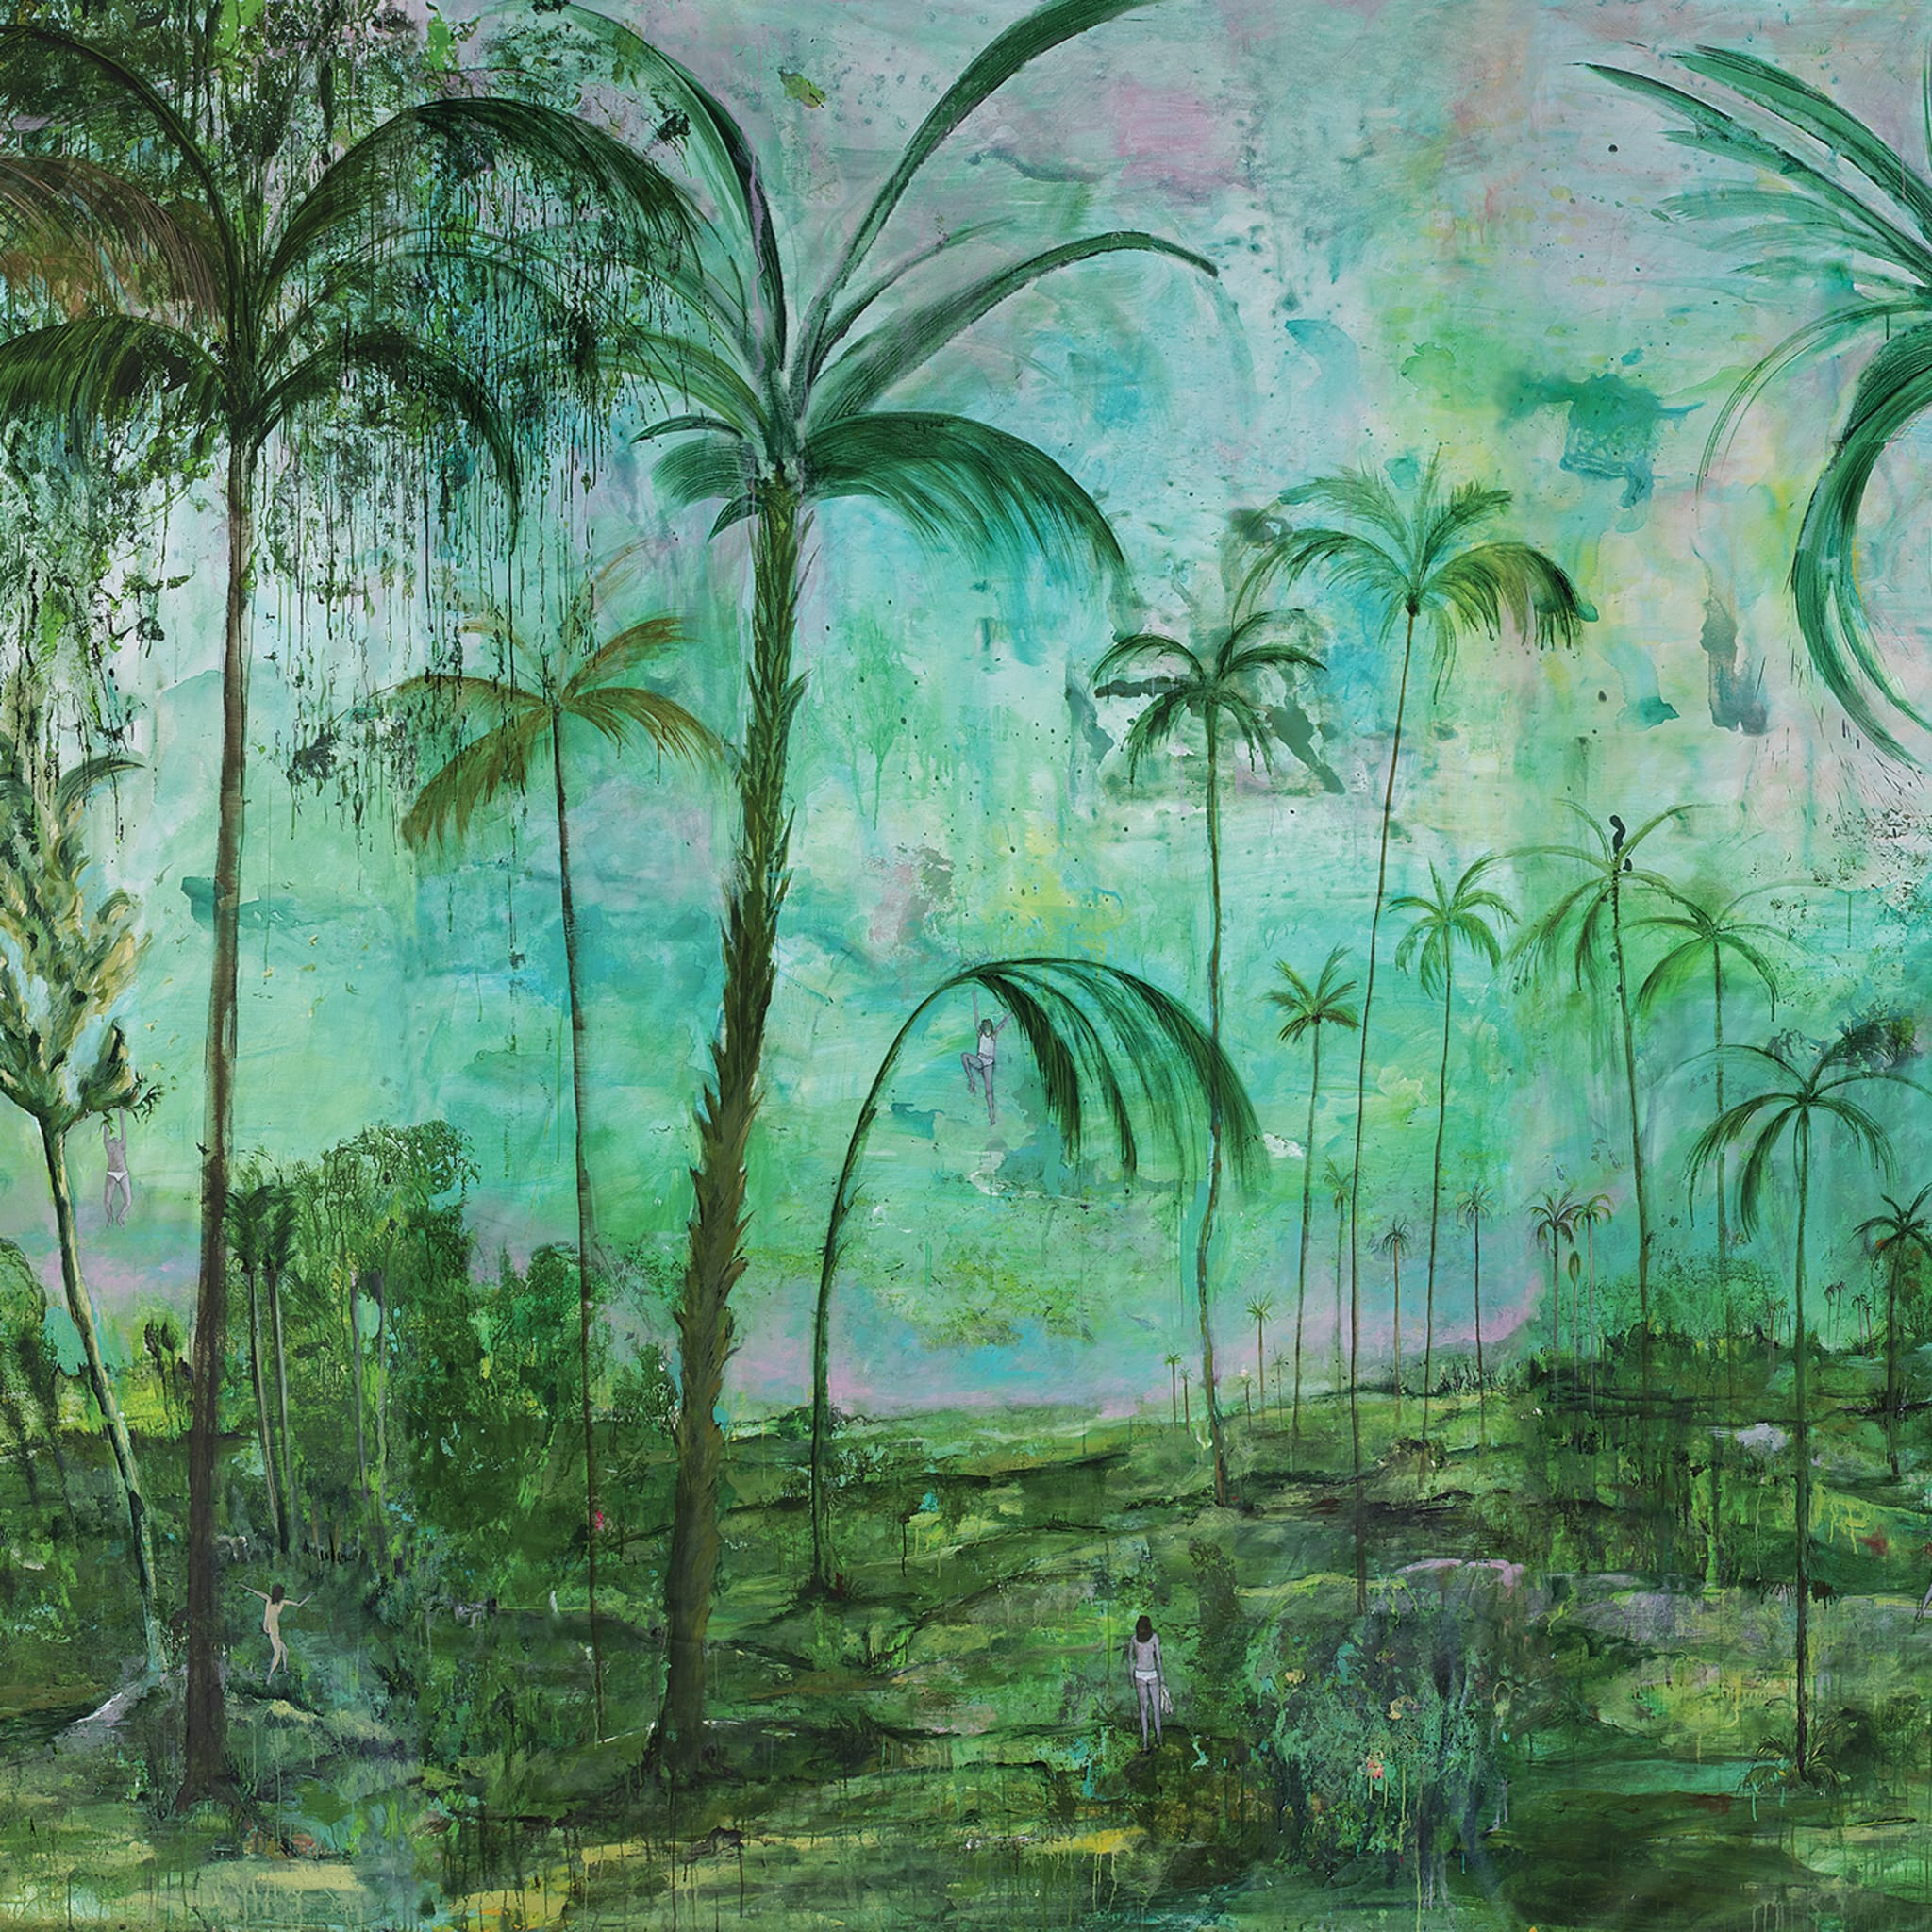 Giardino dell'Eden Wallpaper by Federica Perazzoli - Alternative view 1